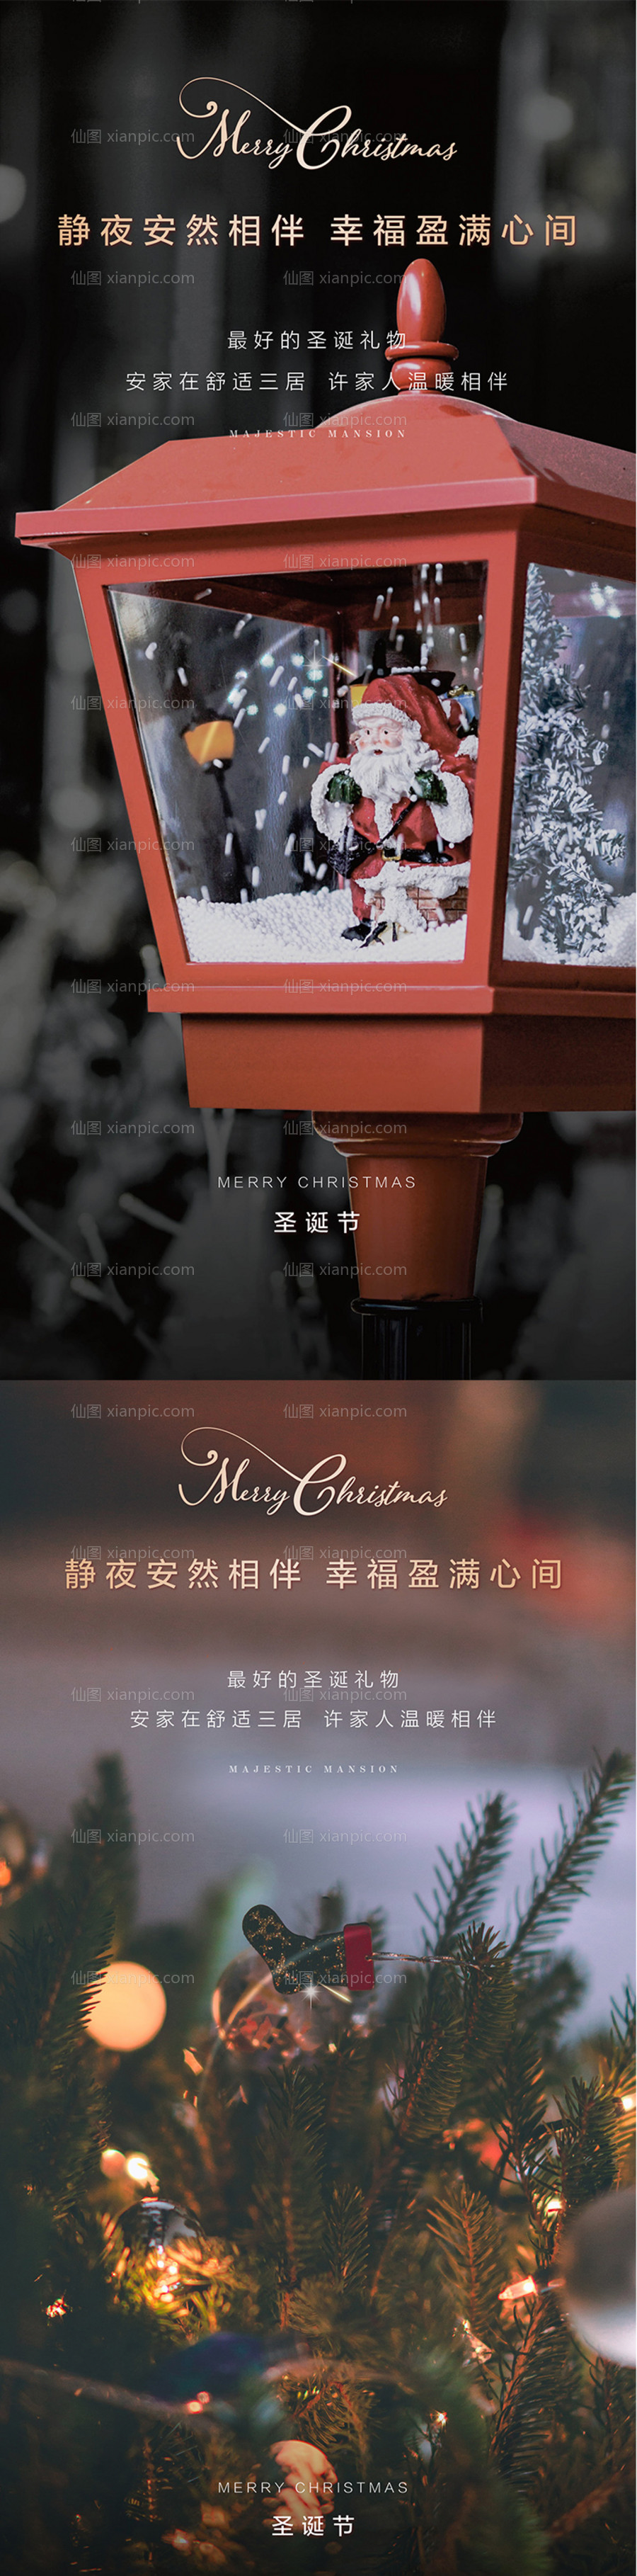 素材乐-圣诞节节日海报